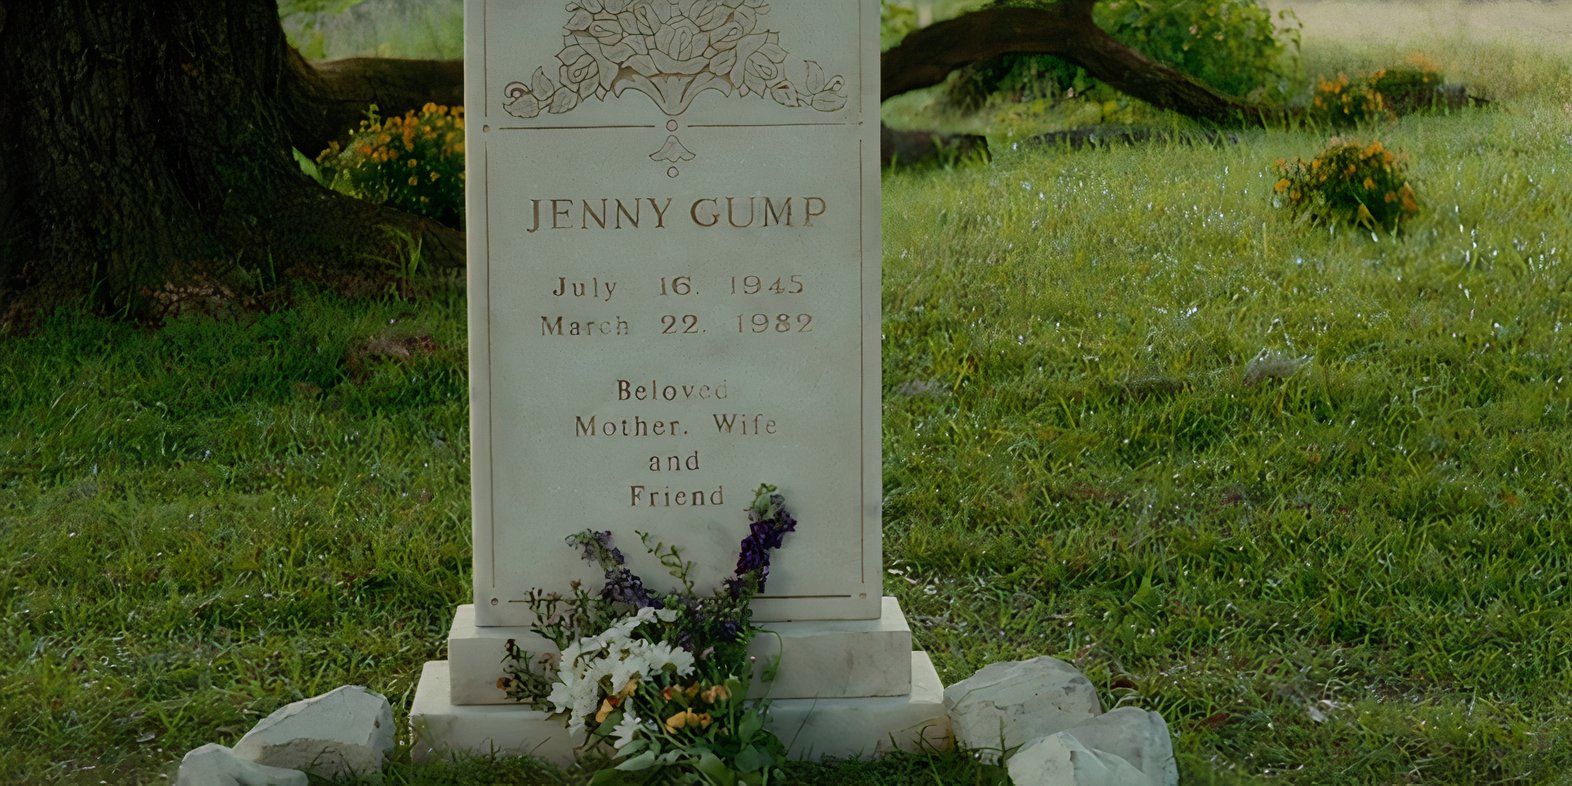 Uma lápide onde se lê "Jenny Gump, 16 de julho de 1945, 22 de março de 1987, Amada Mãe, Esposa e Amiga" de Forrest Gump